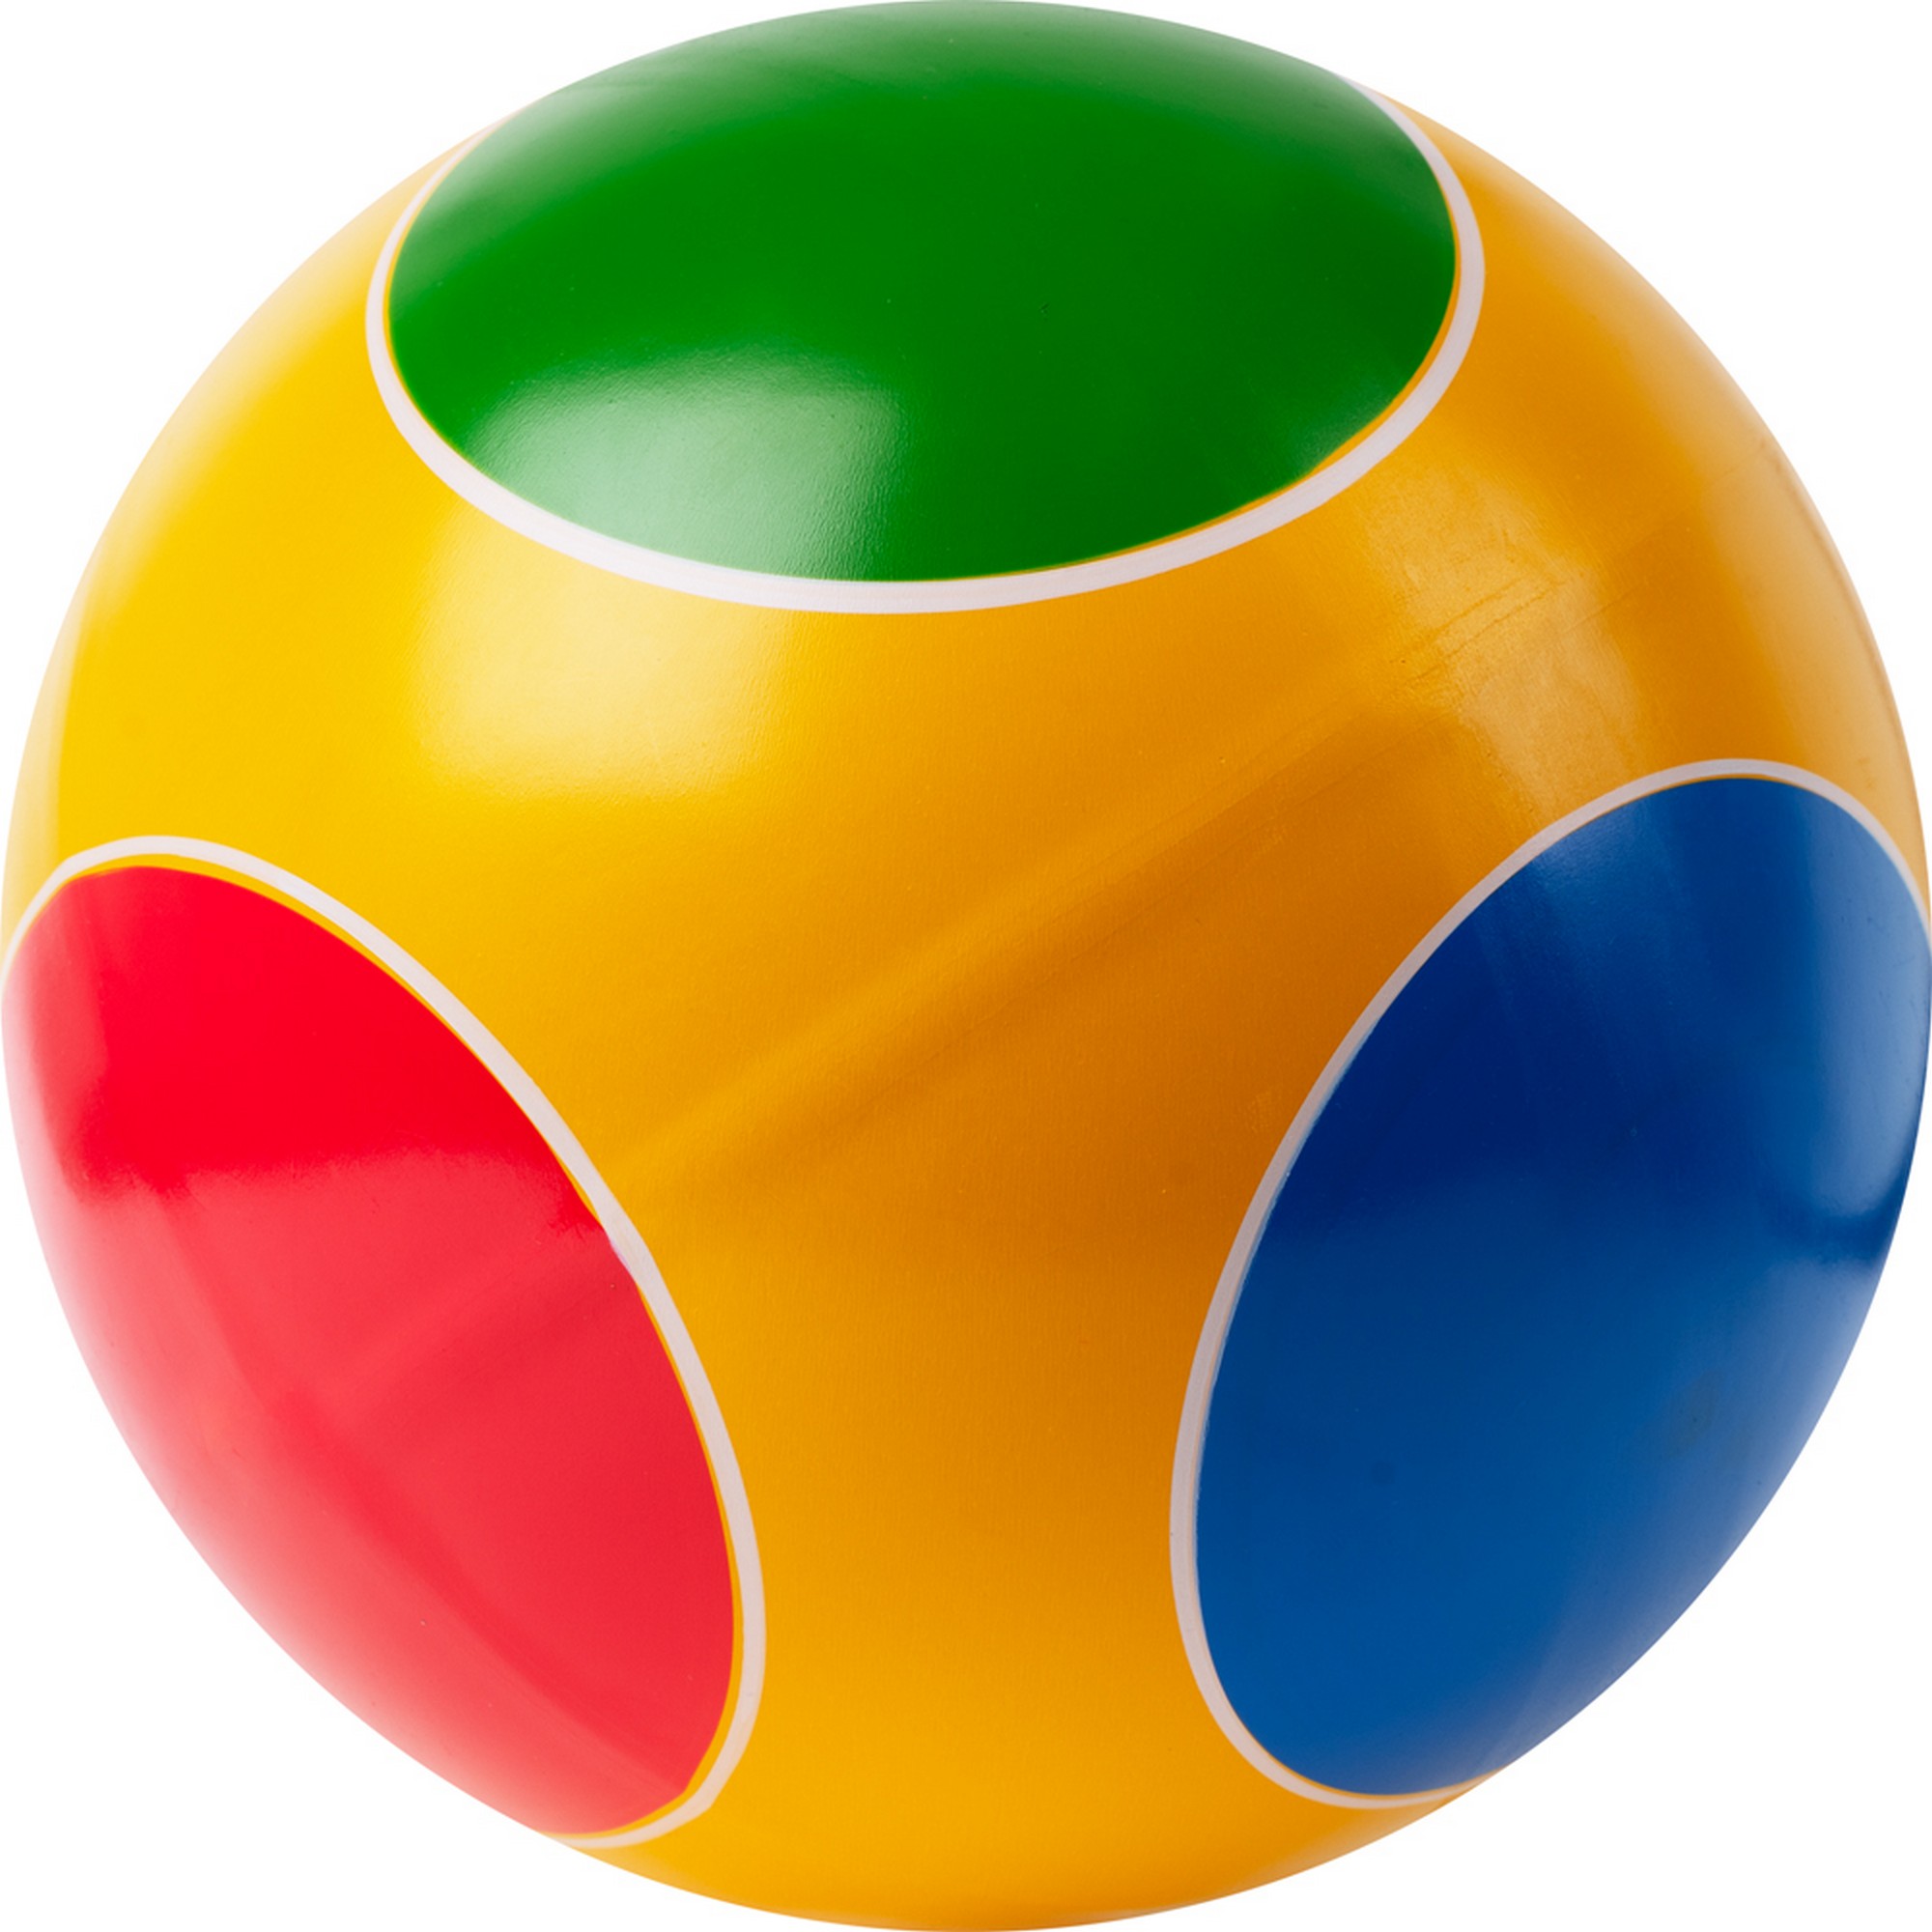 Мяч детский Кружочки ручное окрашивание, d20см, резина Р3-200-Кр мультиколор 2000_2000